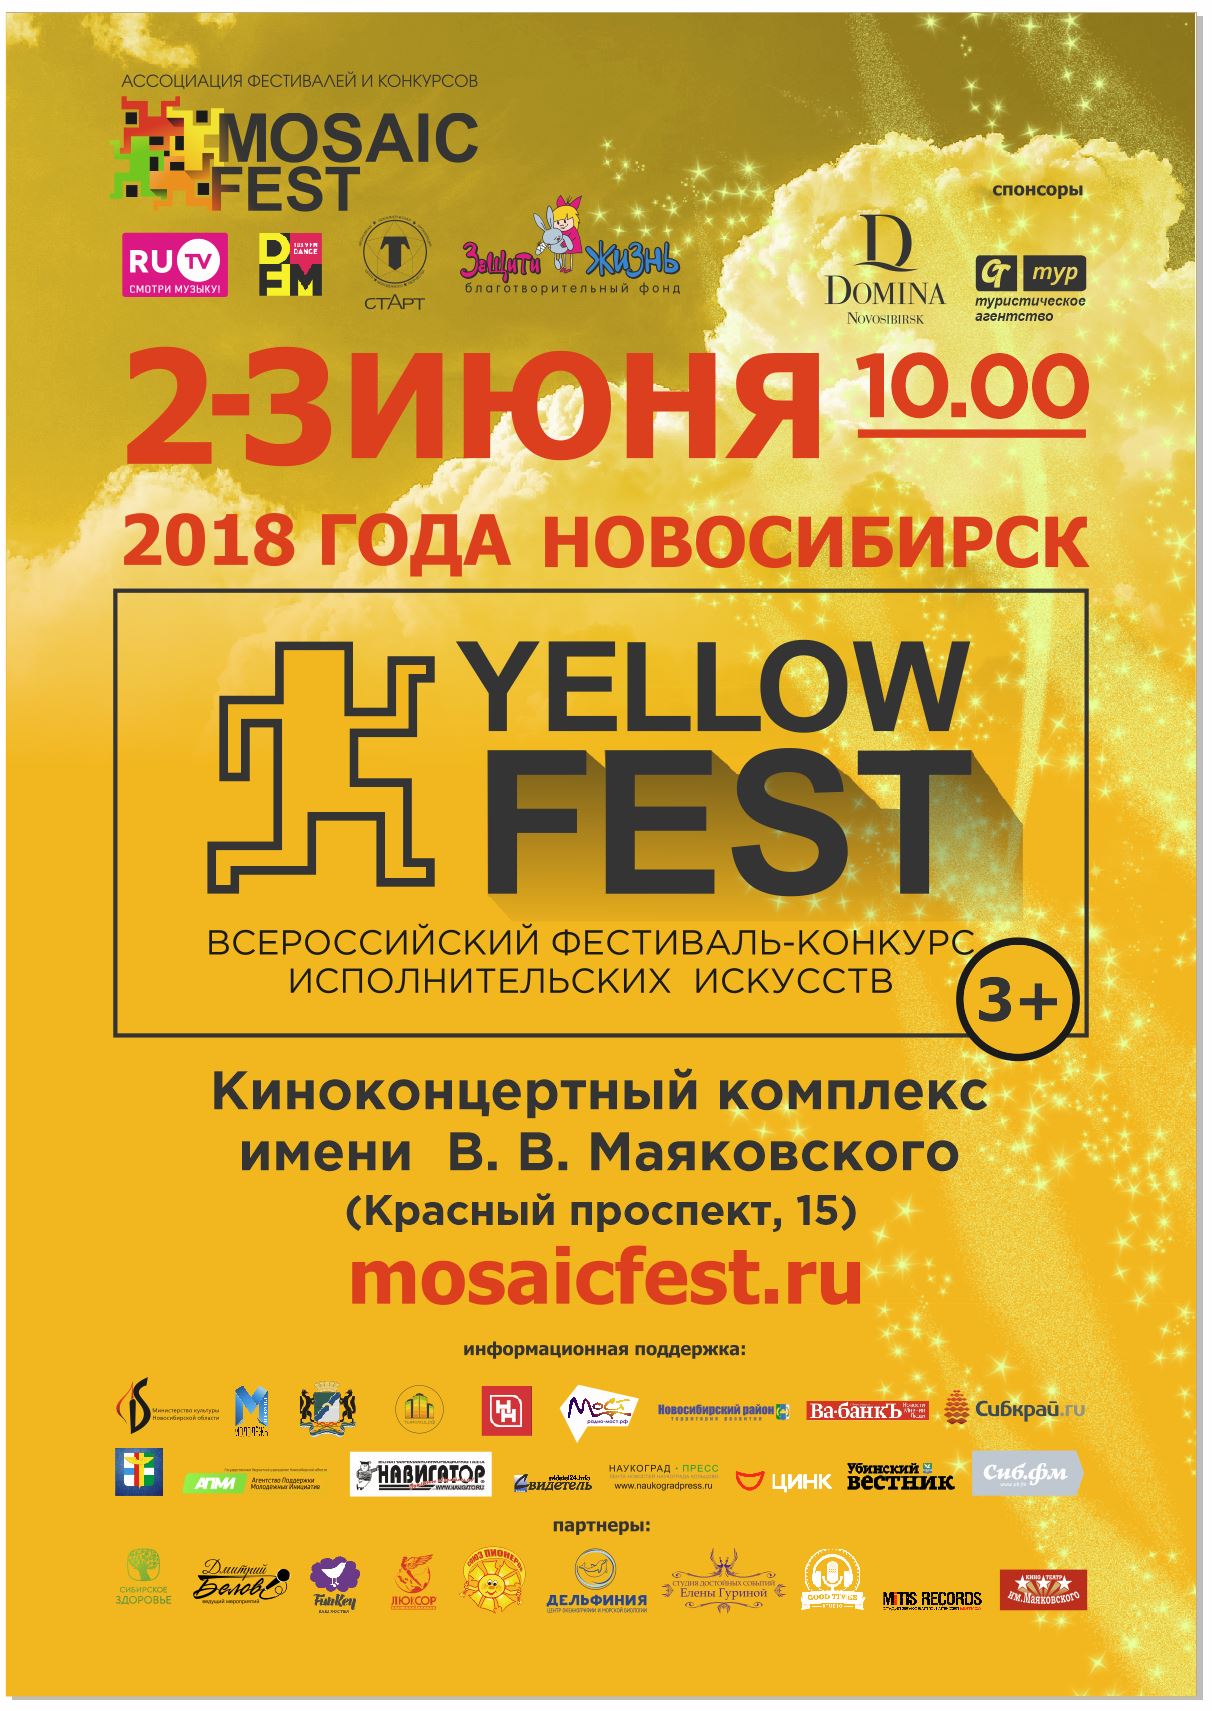 Конкурс-фестивать "YELLOW FEST" пройдет в Новосибирске 